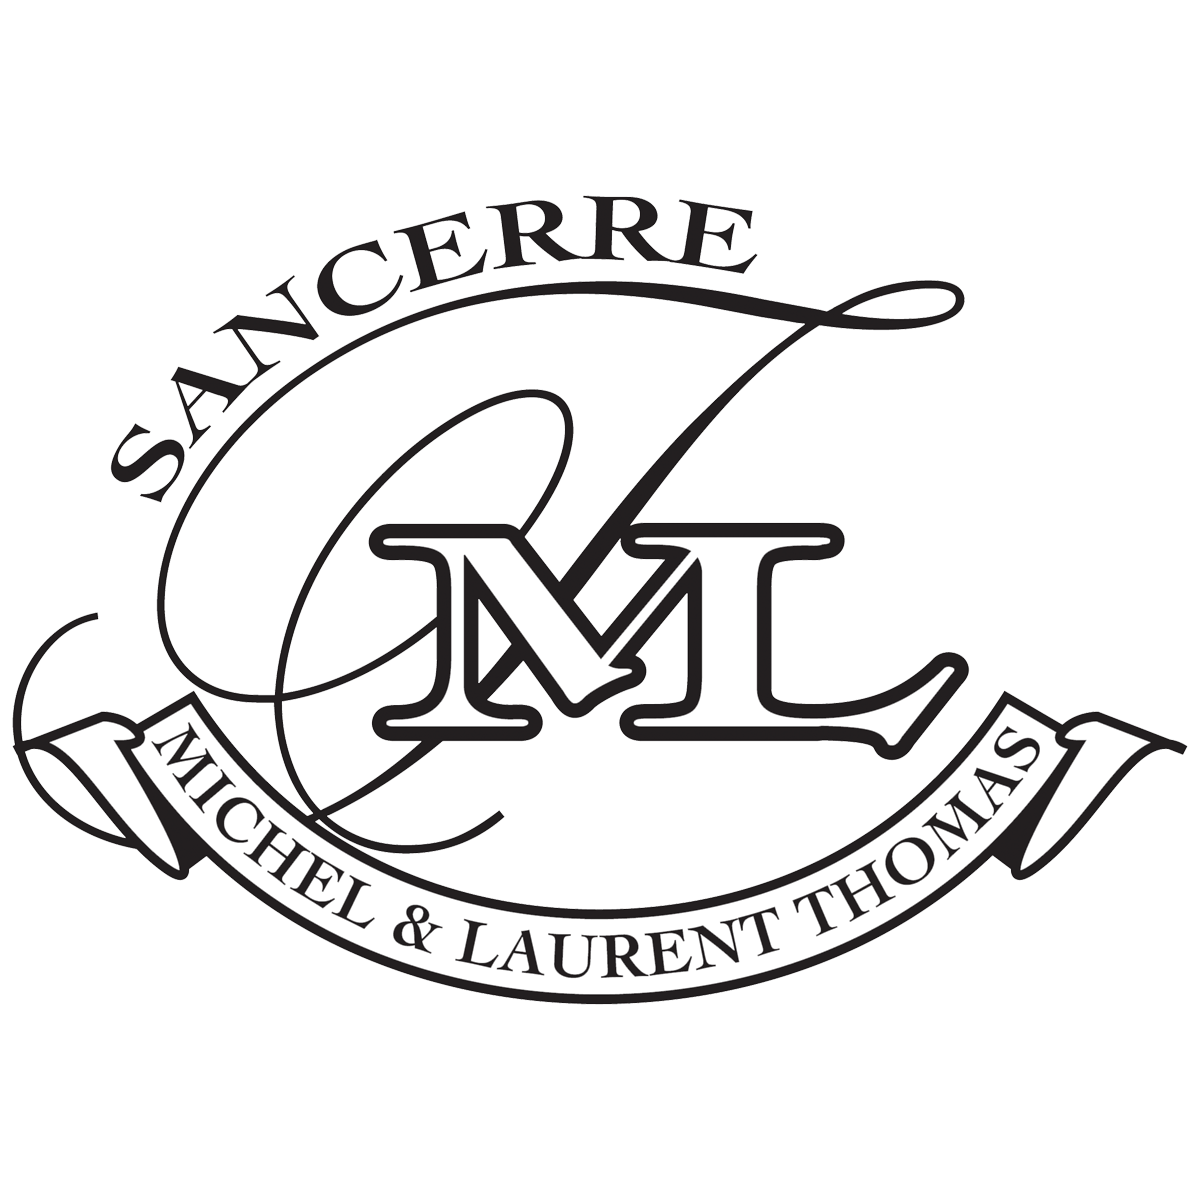 Logo Domaine Michel Thomas et Fils